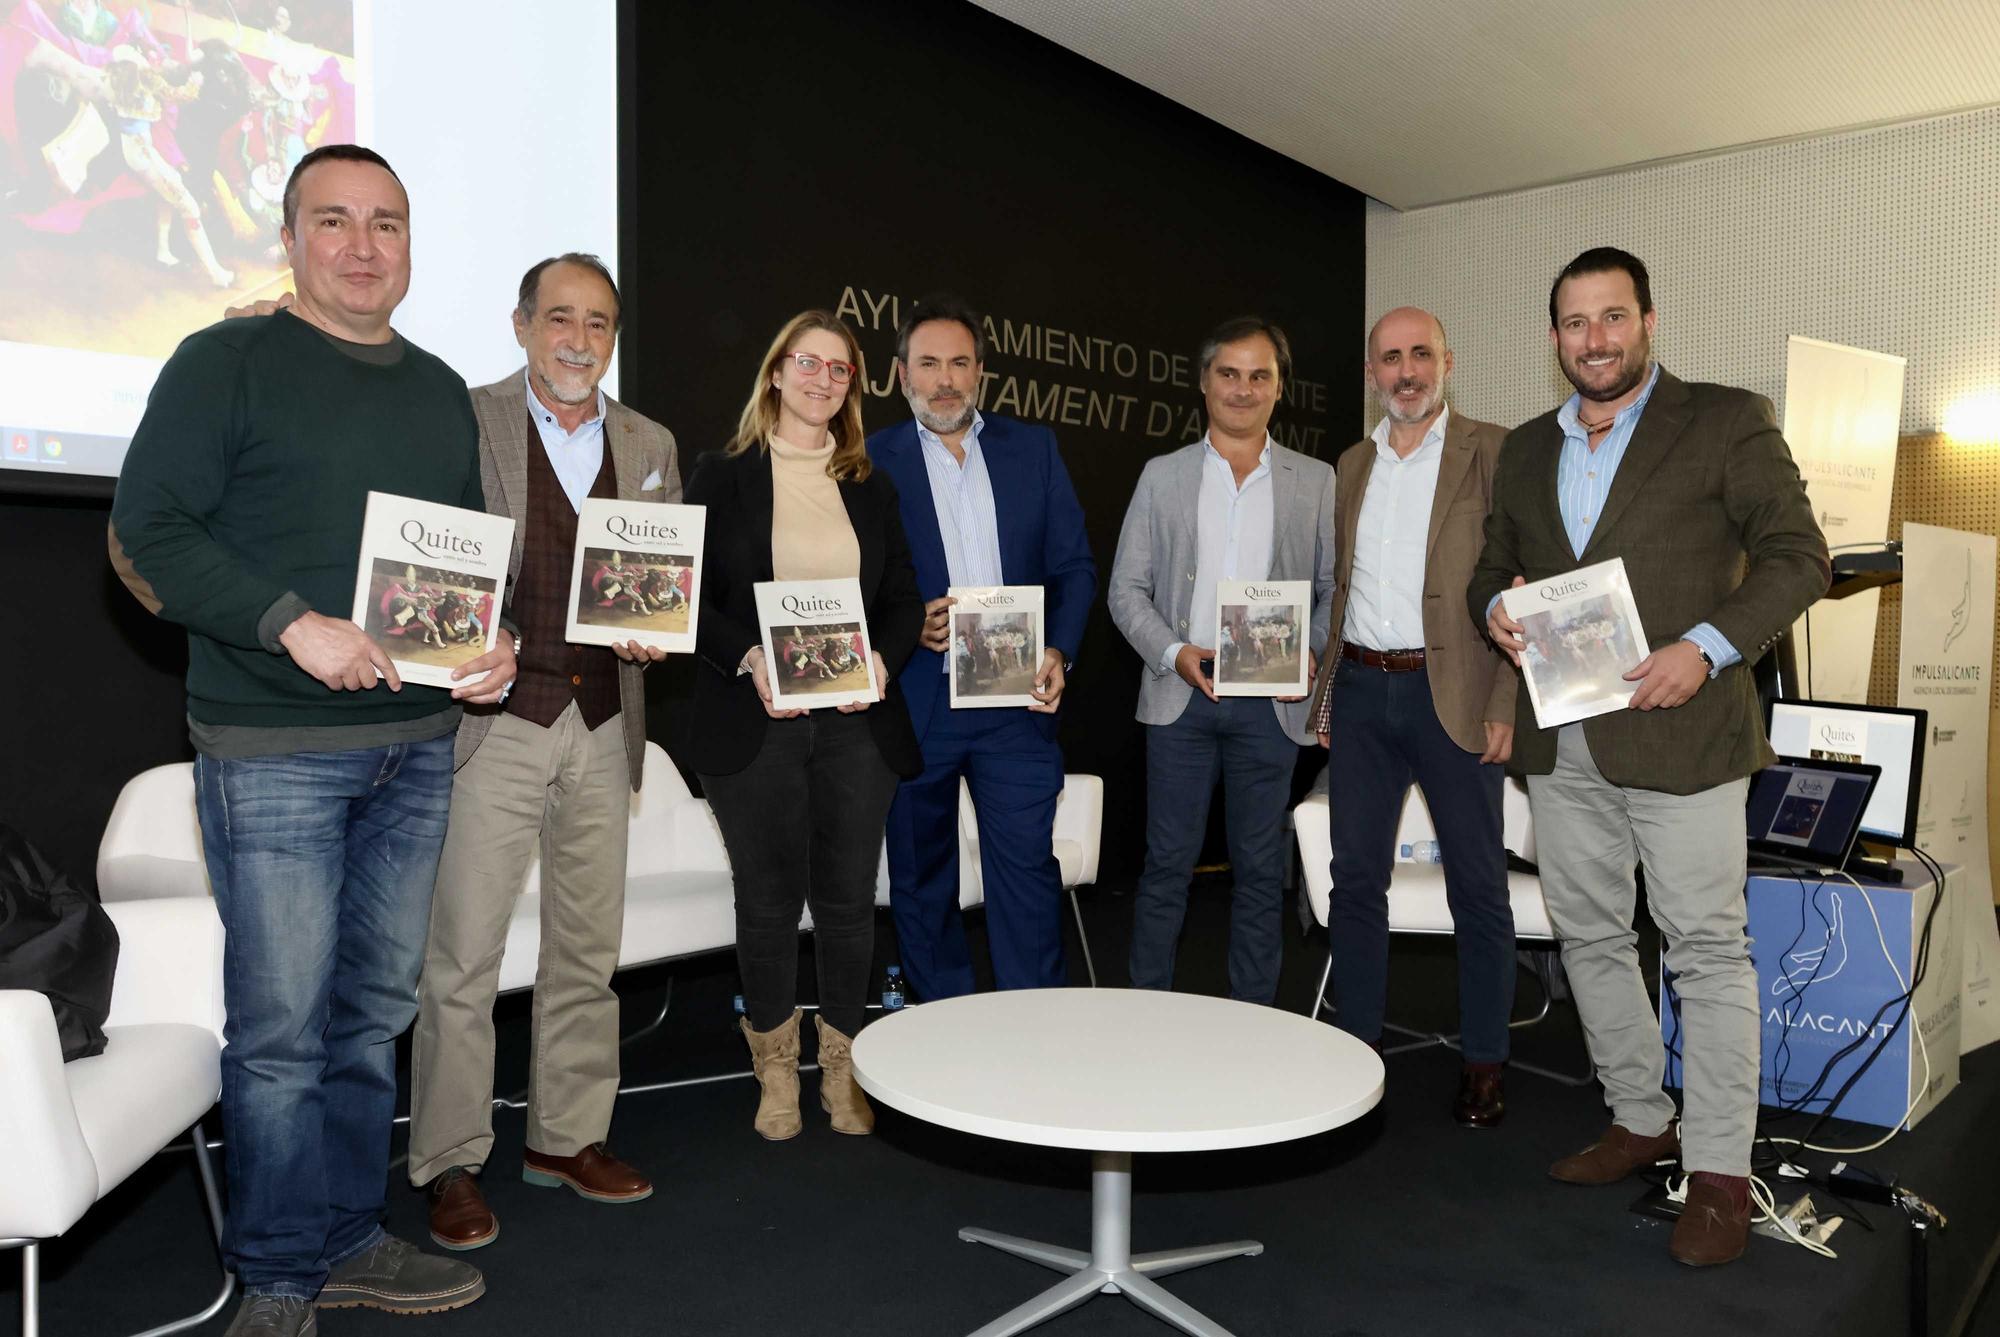 Luis Francisco Esplá y Carlos Marzal presentan la revista taurina "Quites" en Alicante